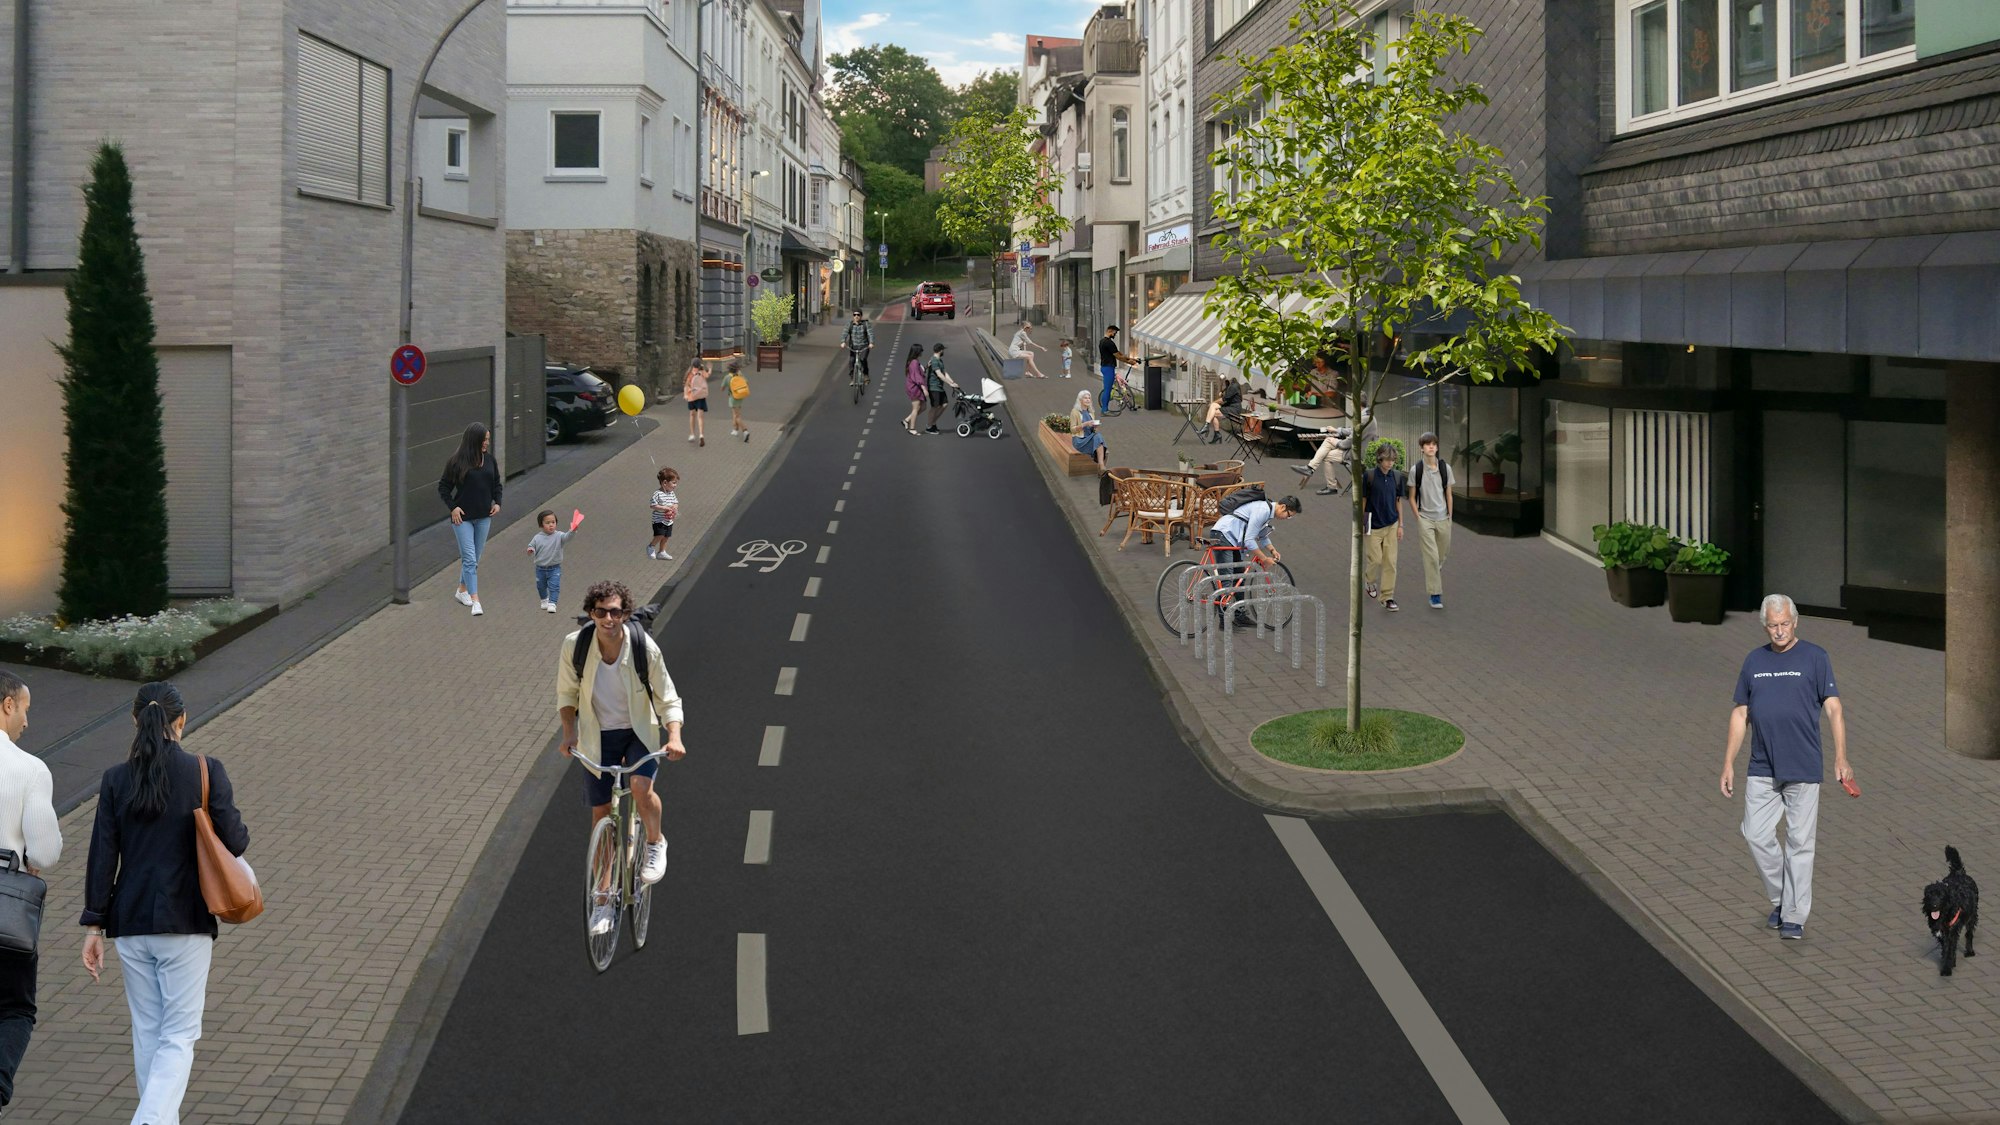 Der computeranimierte Entwurf zeigt breite Fußgängerwege mit Fahrradbügeln, Sitzgelegenheiten und Bäumen. Auf einer Fahrradspur sind zwei Radfahrer unterwegs.